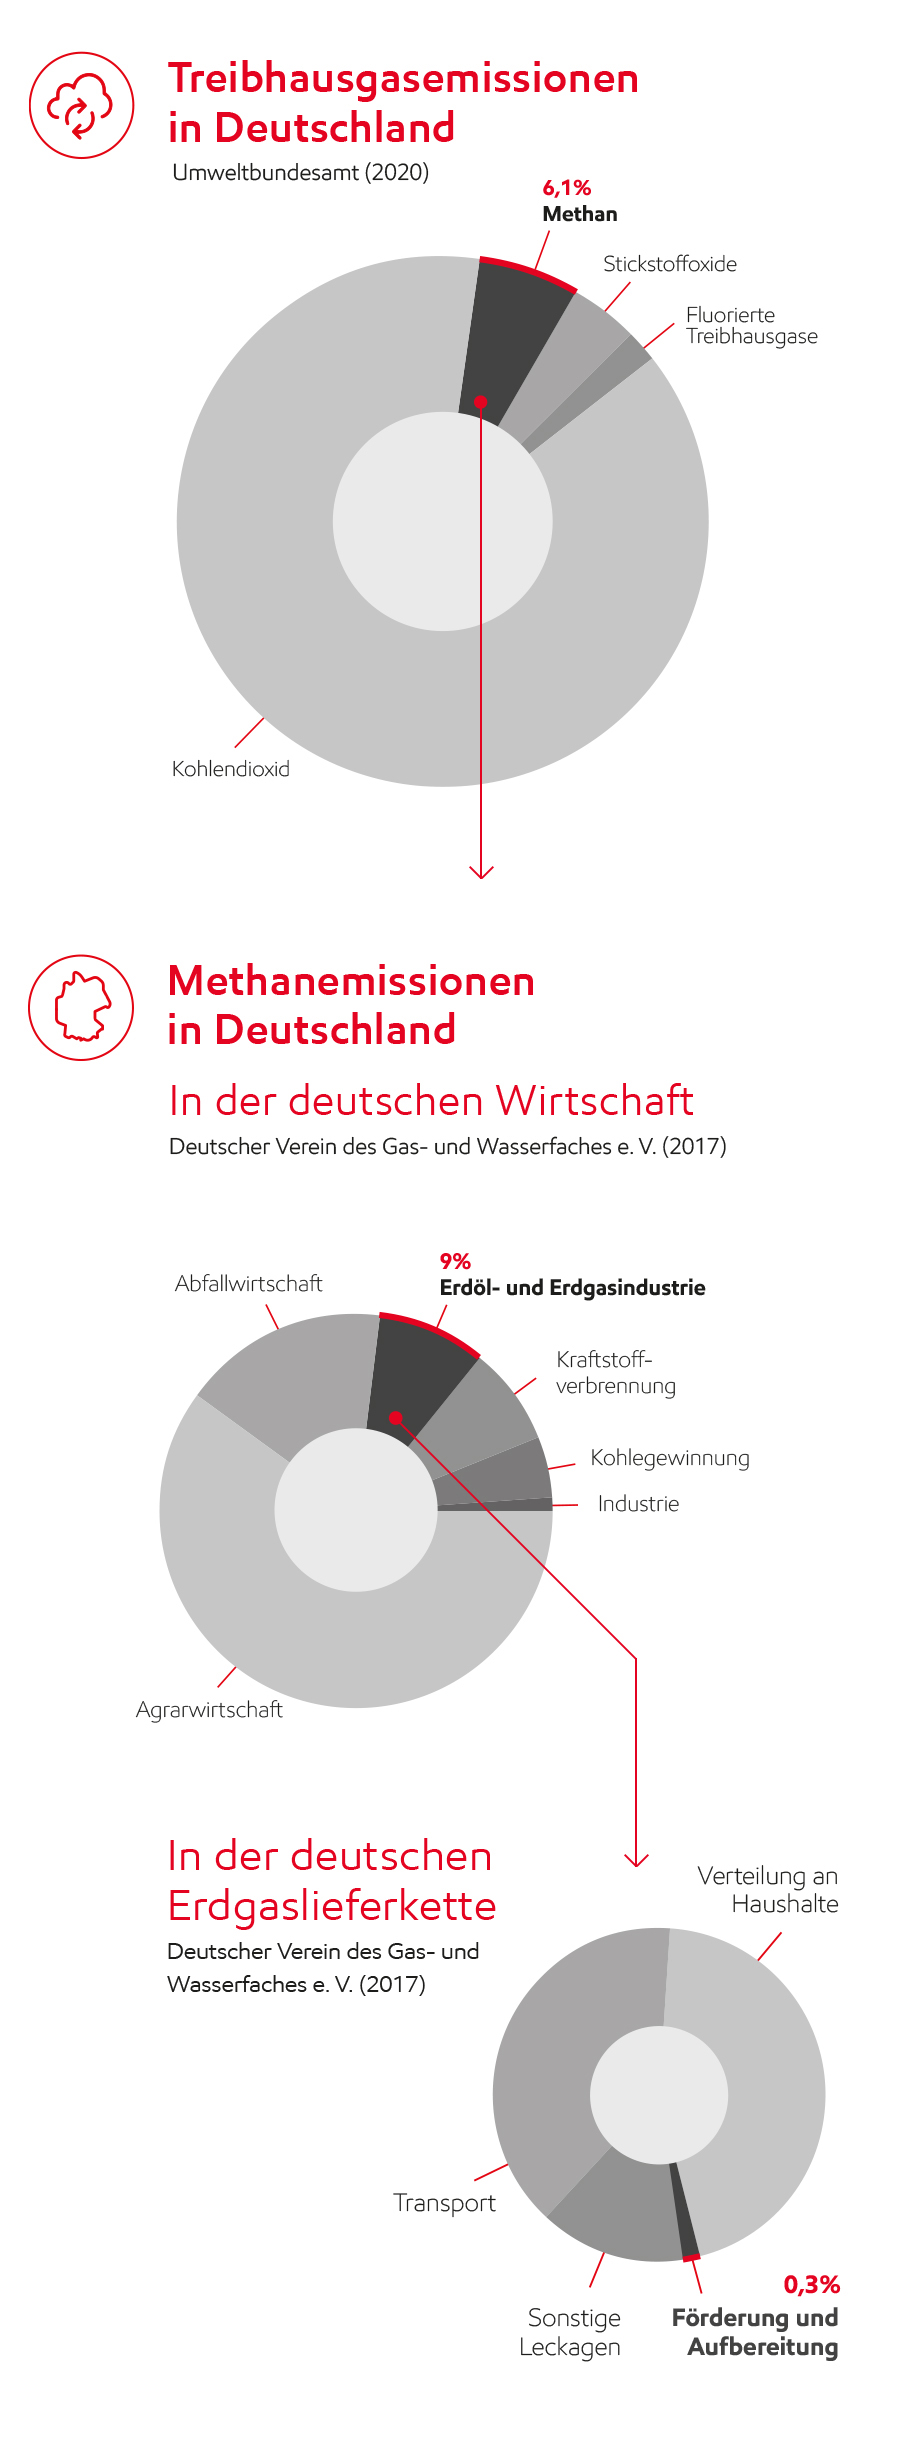 Image Treibhausgas- und Methanemissionen in Deutschland